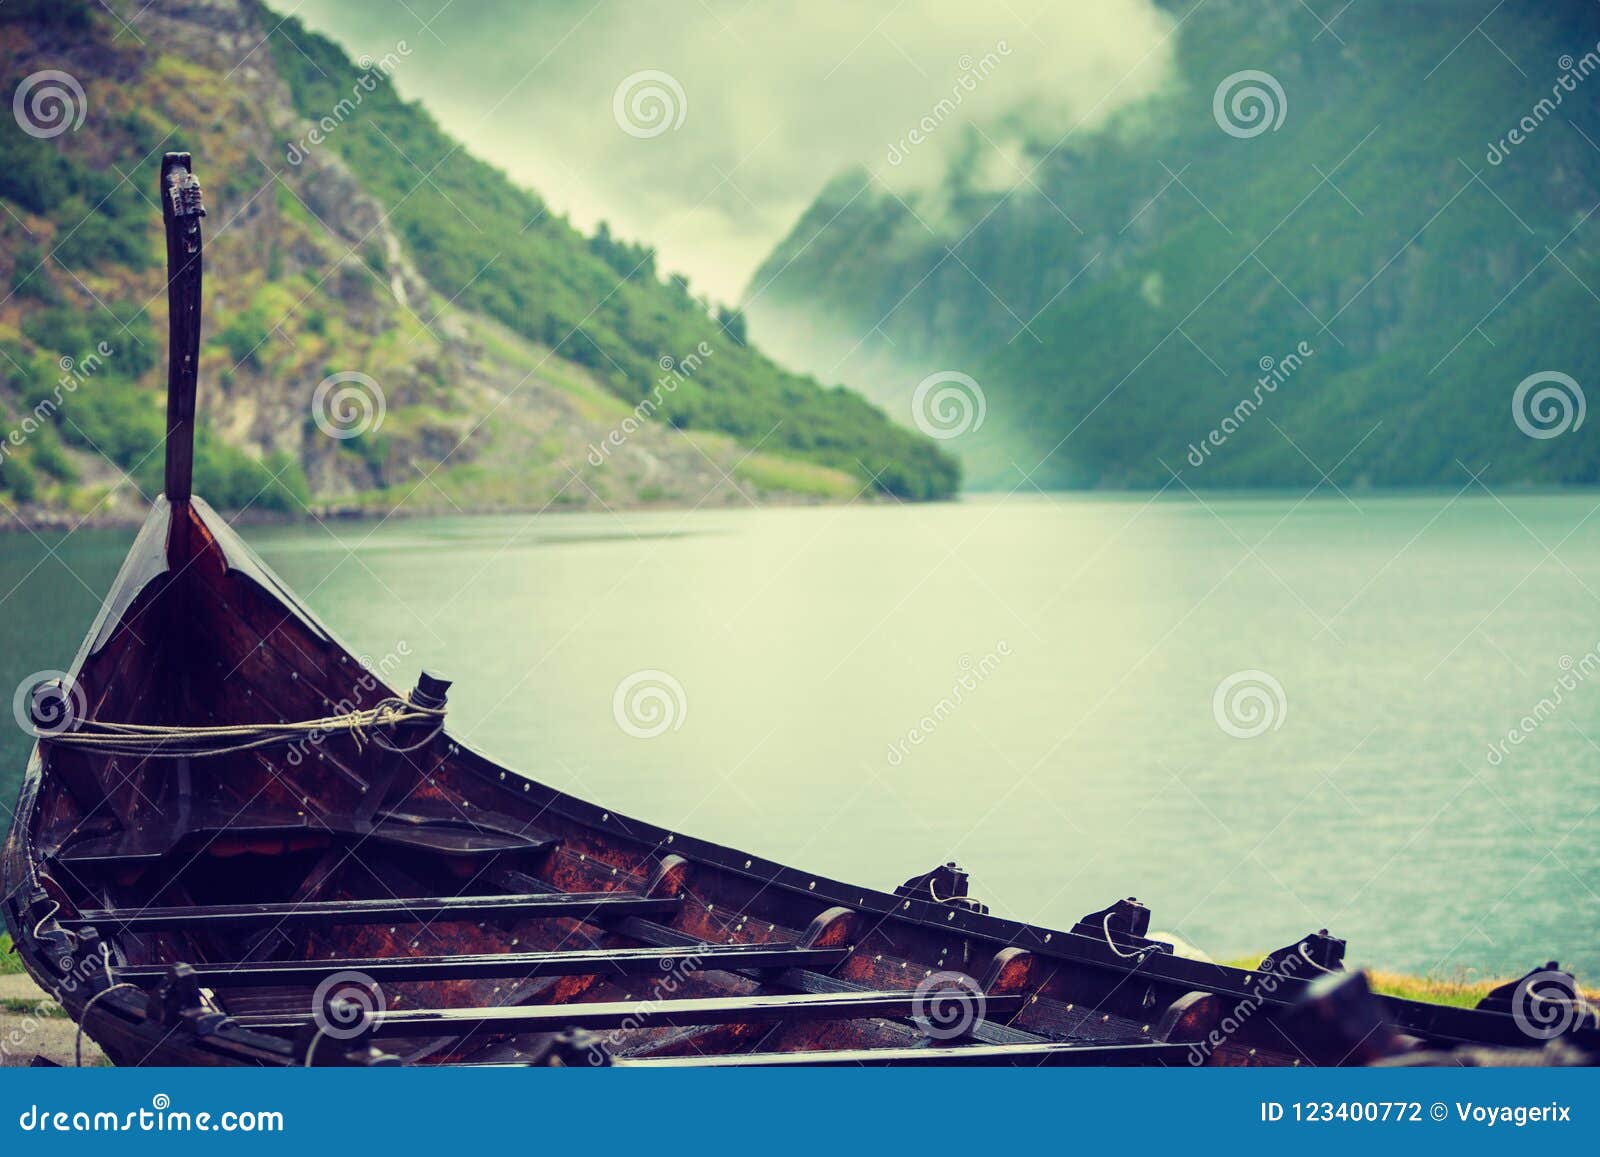 De Oude Houten Boot Van Viking in Noorse Aard Stock Foto - Image of ...